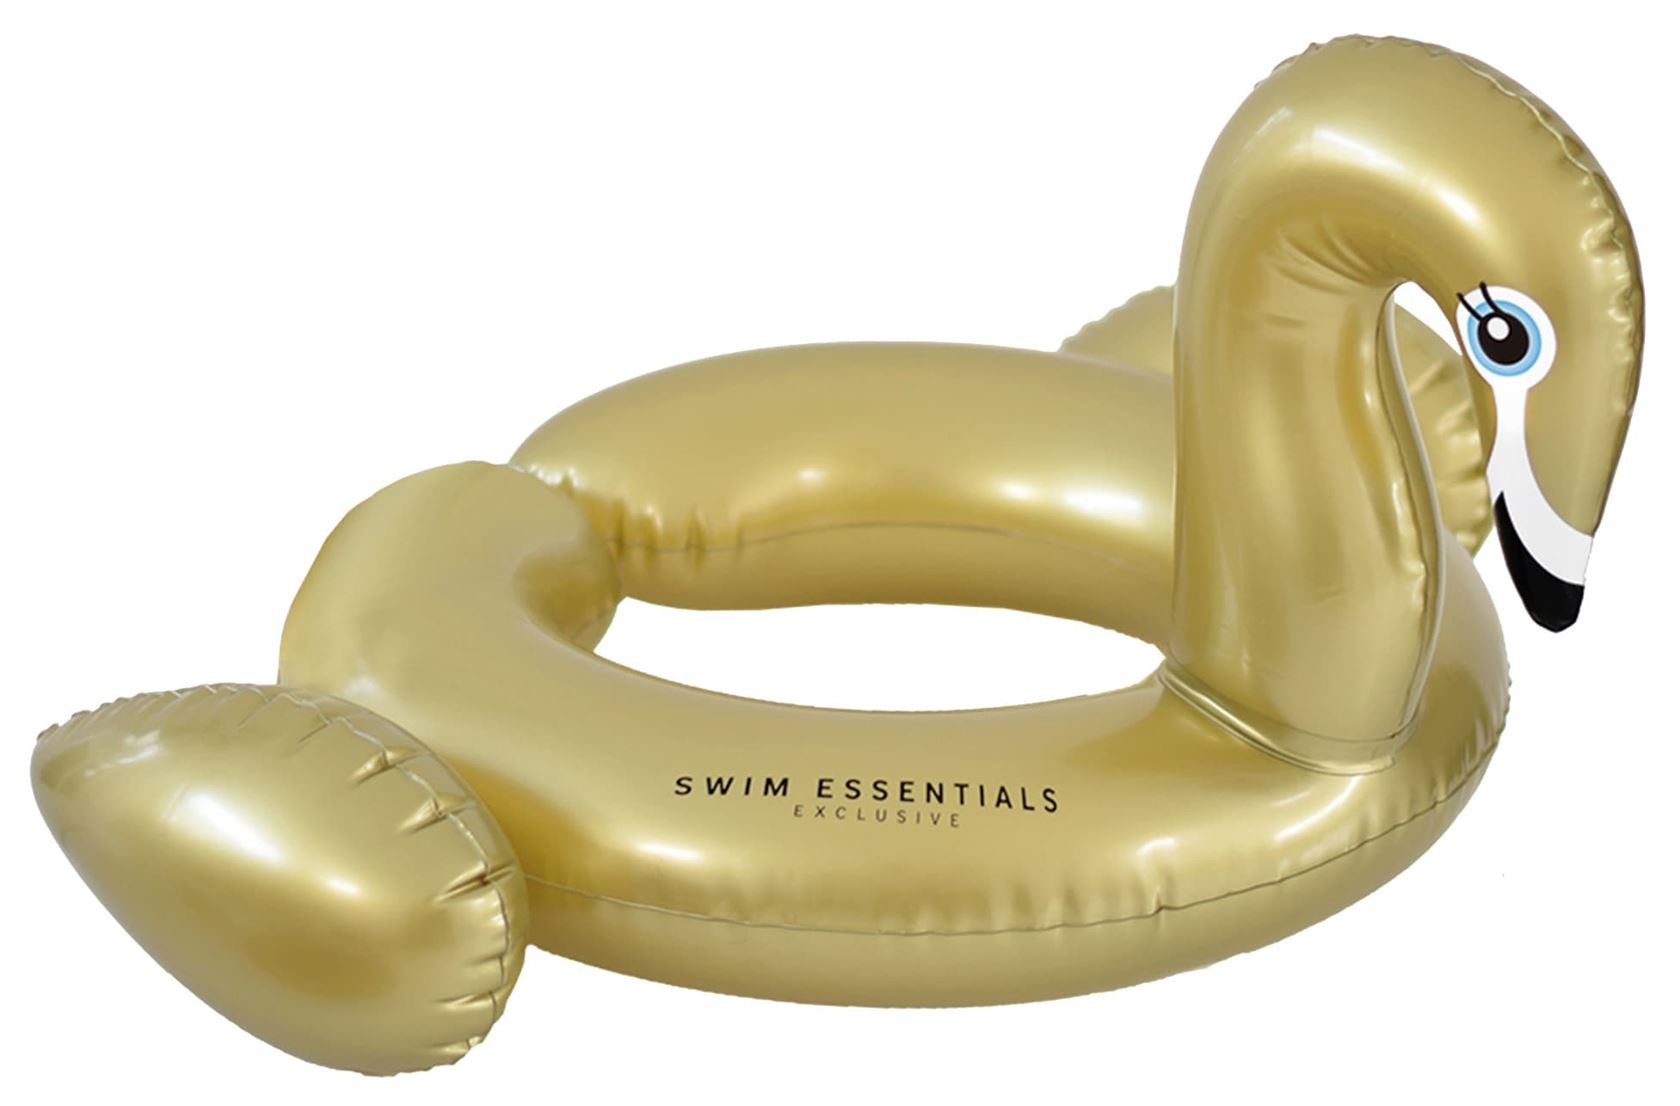 Panier de natation gonflable Swim Essentials Golden Swan - Ø43cm